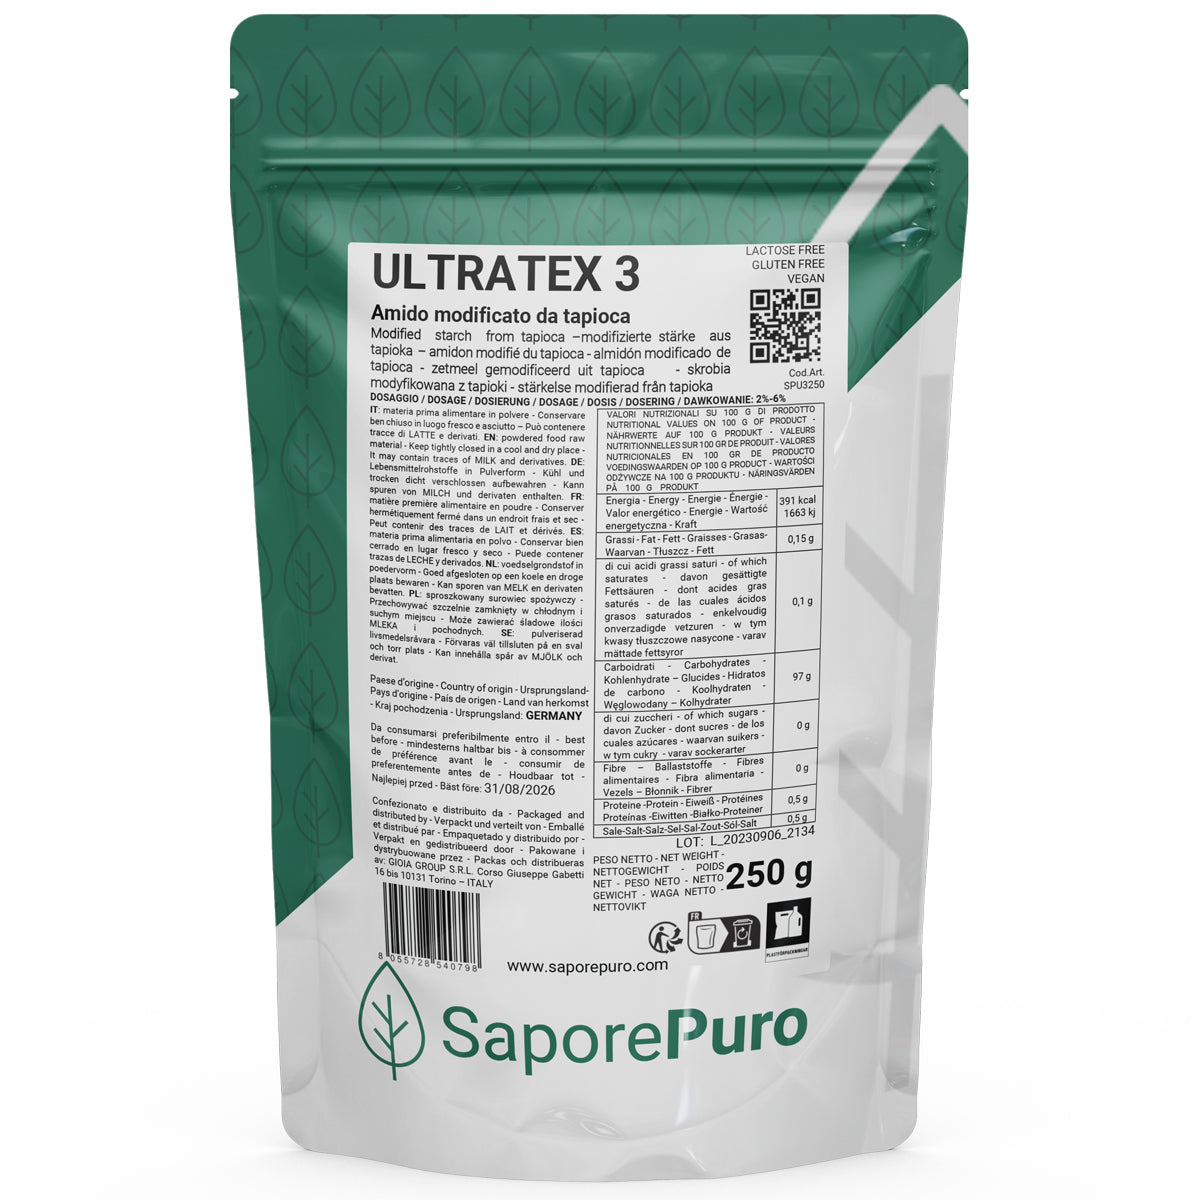 ULTRATEX 3 - 250gr - Amido modificato da Tapioca - Uso Caldo e Freddo - SaporePuro